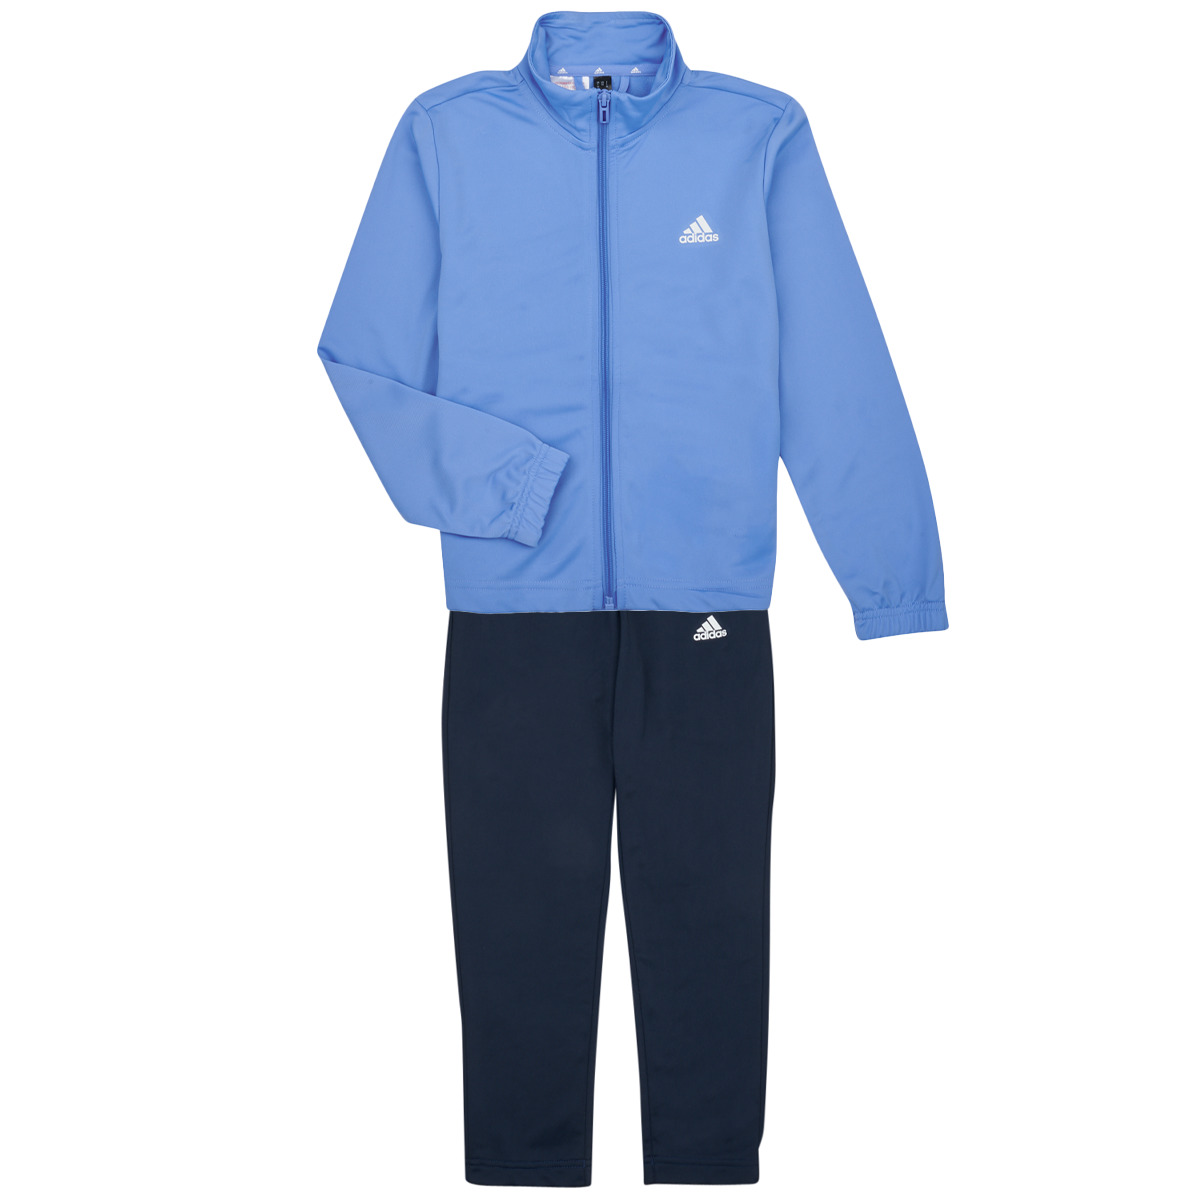 Adidas Sportswear Bleu ESS BL TS 1I4s6t44